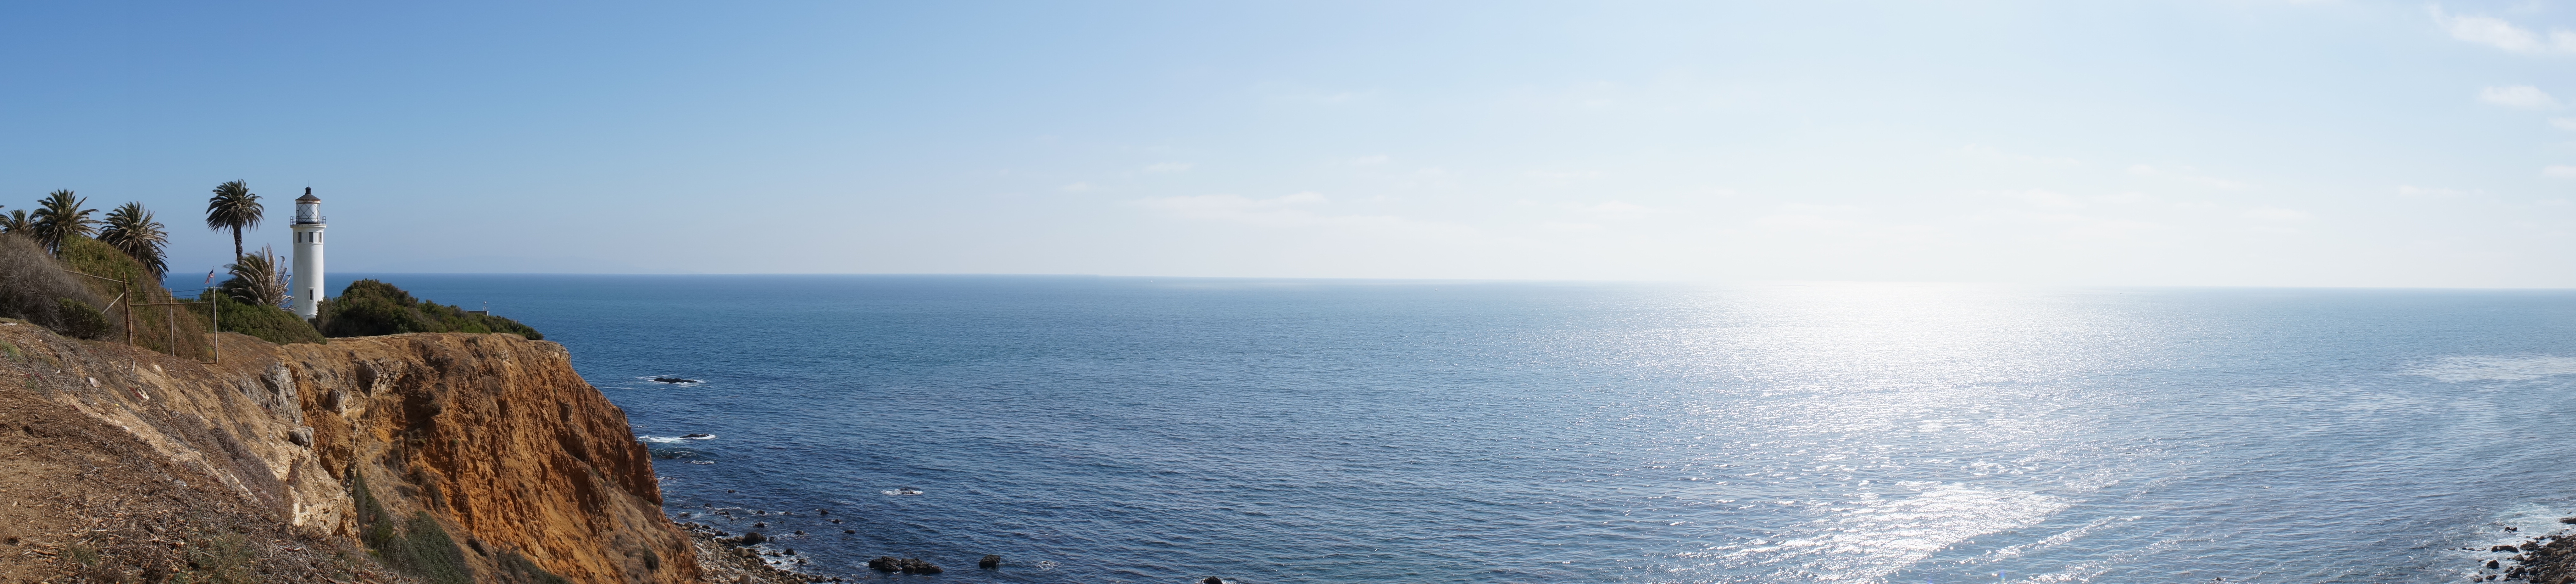 Seashore panorama photo